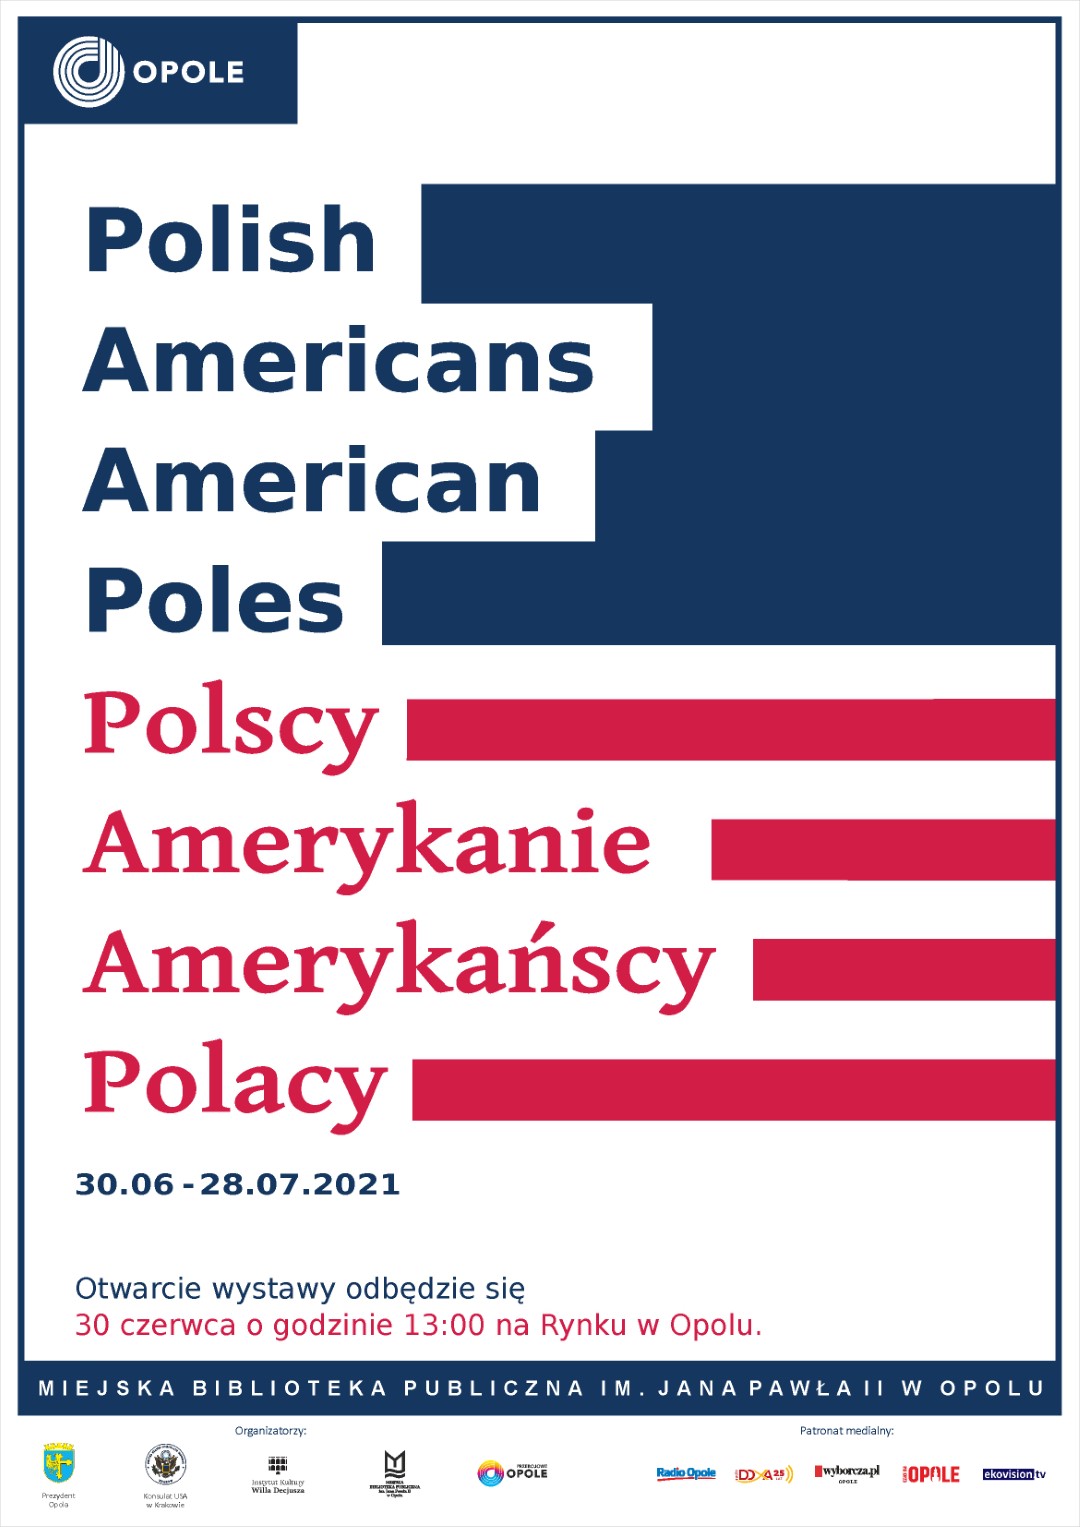 WYSTAWA „POLISH AMERICANS/AMERICAN POLES. POLSCY AMERYKANIE/AMERYKAŃSCY POLACY”